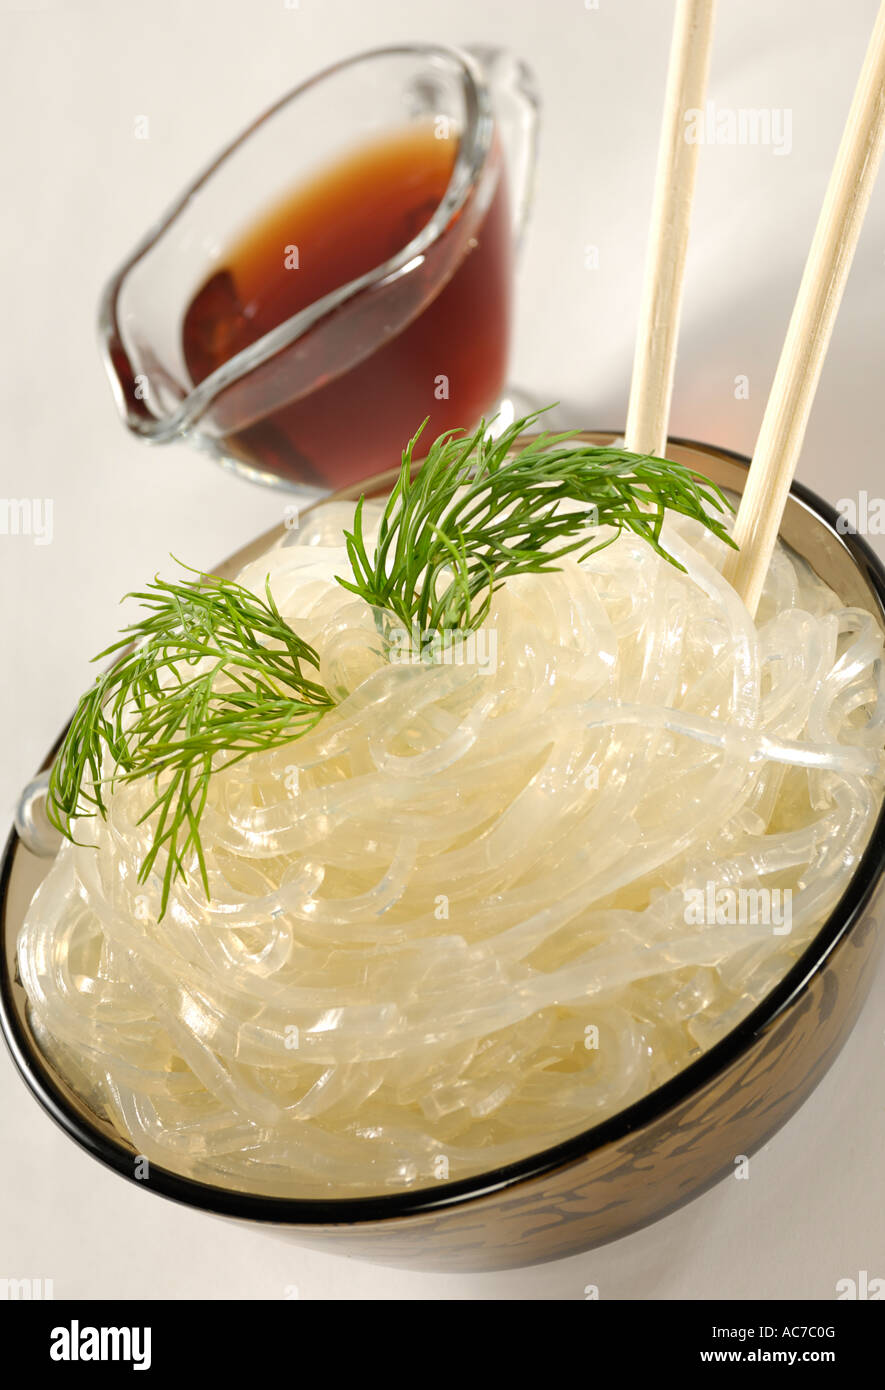 Cinese di vermicelli di riso Riso tagliatelle in una terrina la farina alimentare Foto Stock